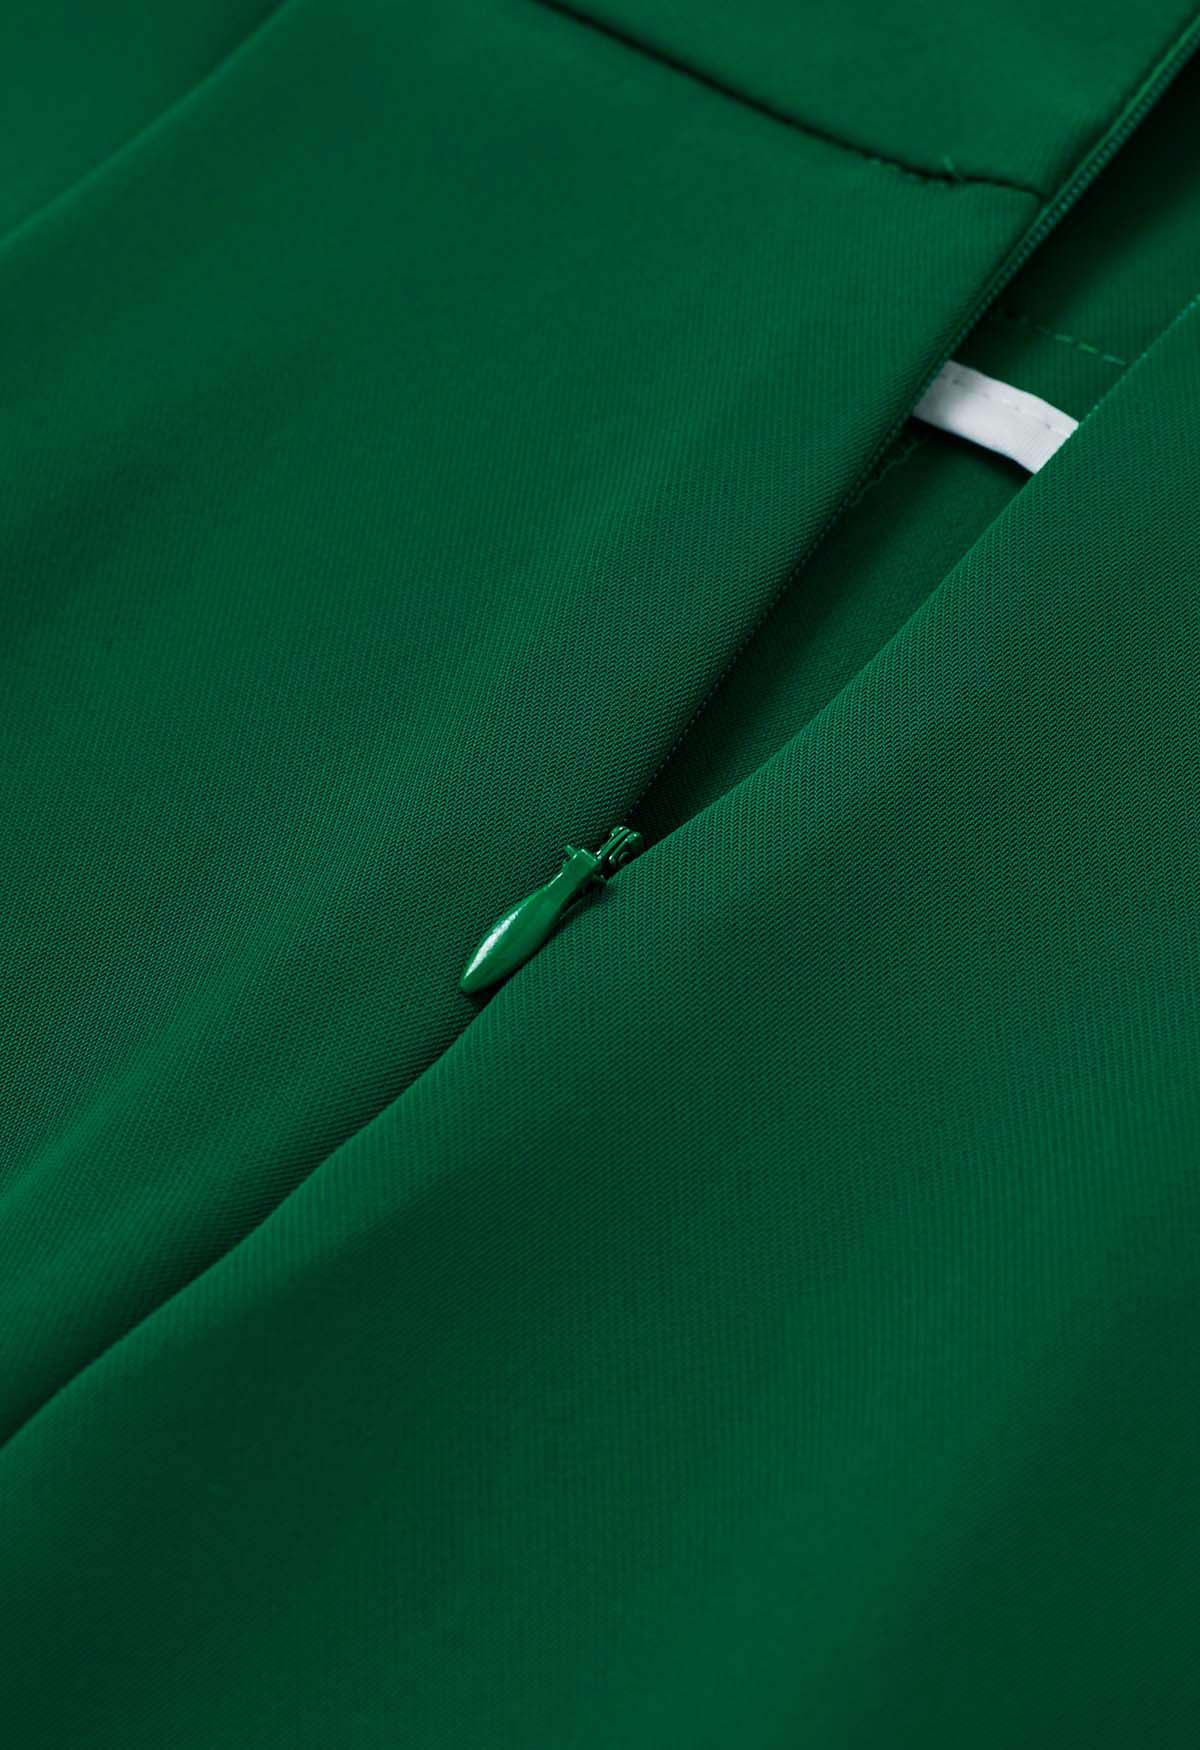 Pantalones rectos con cintura plisada en verde